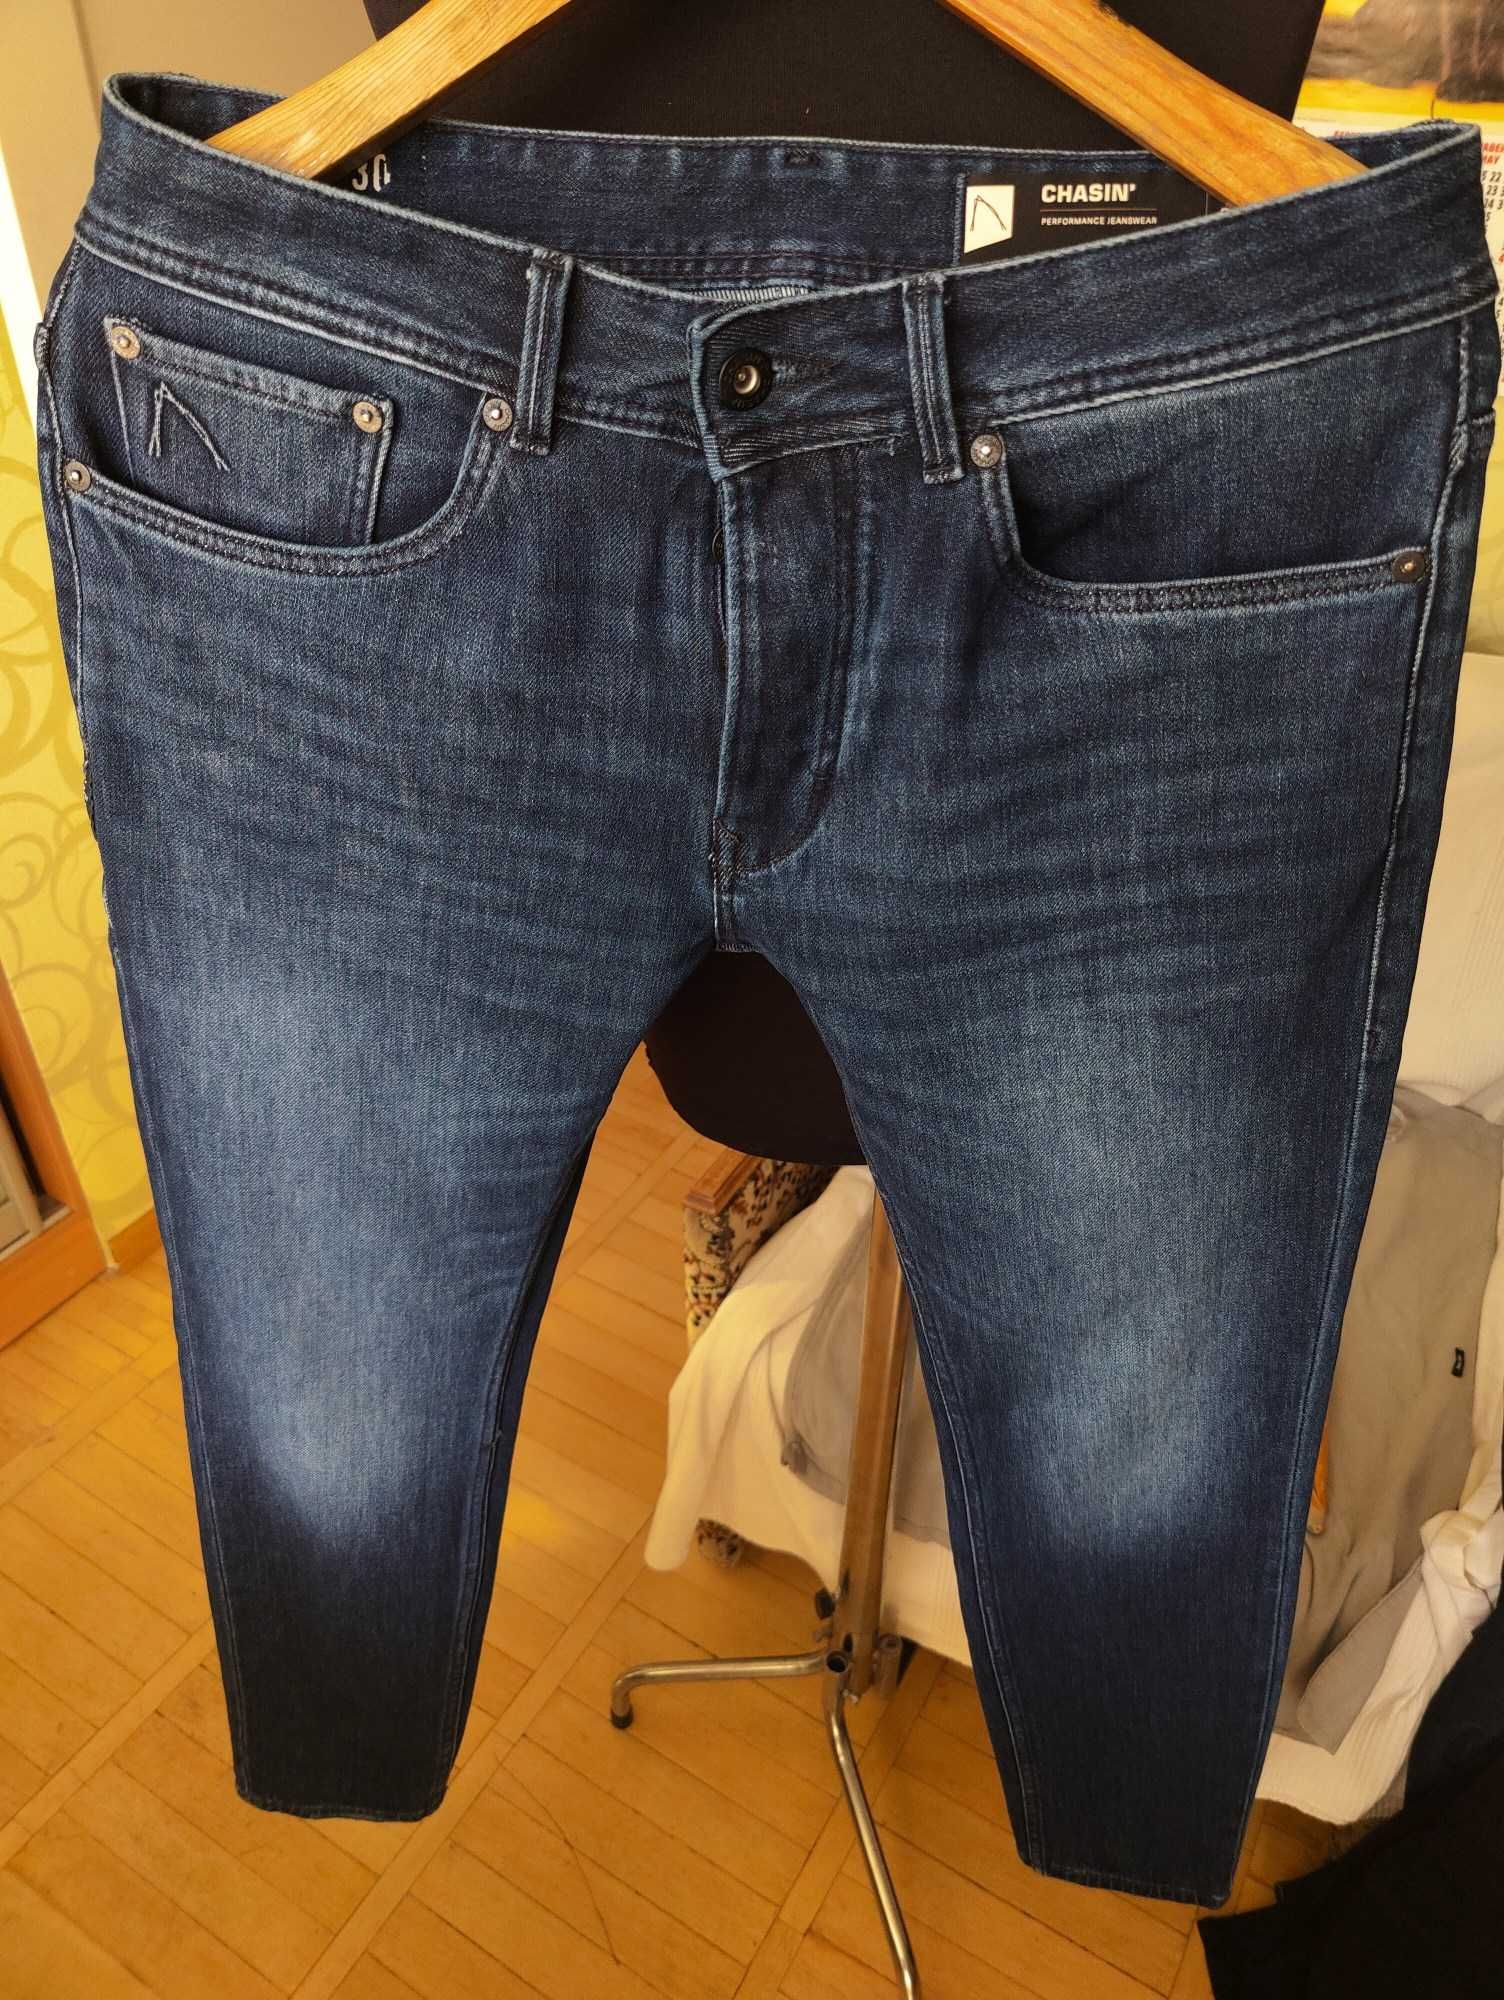 Джинсы Chasin jeans Дания W31 stretch navy.